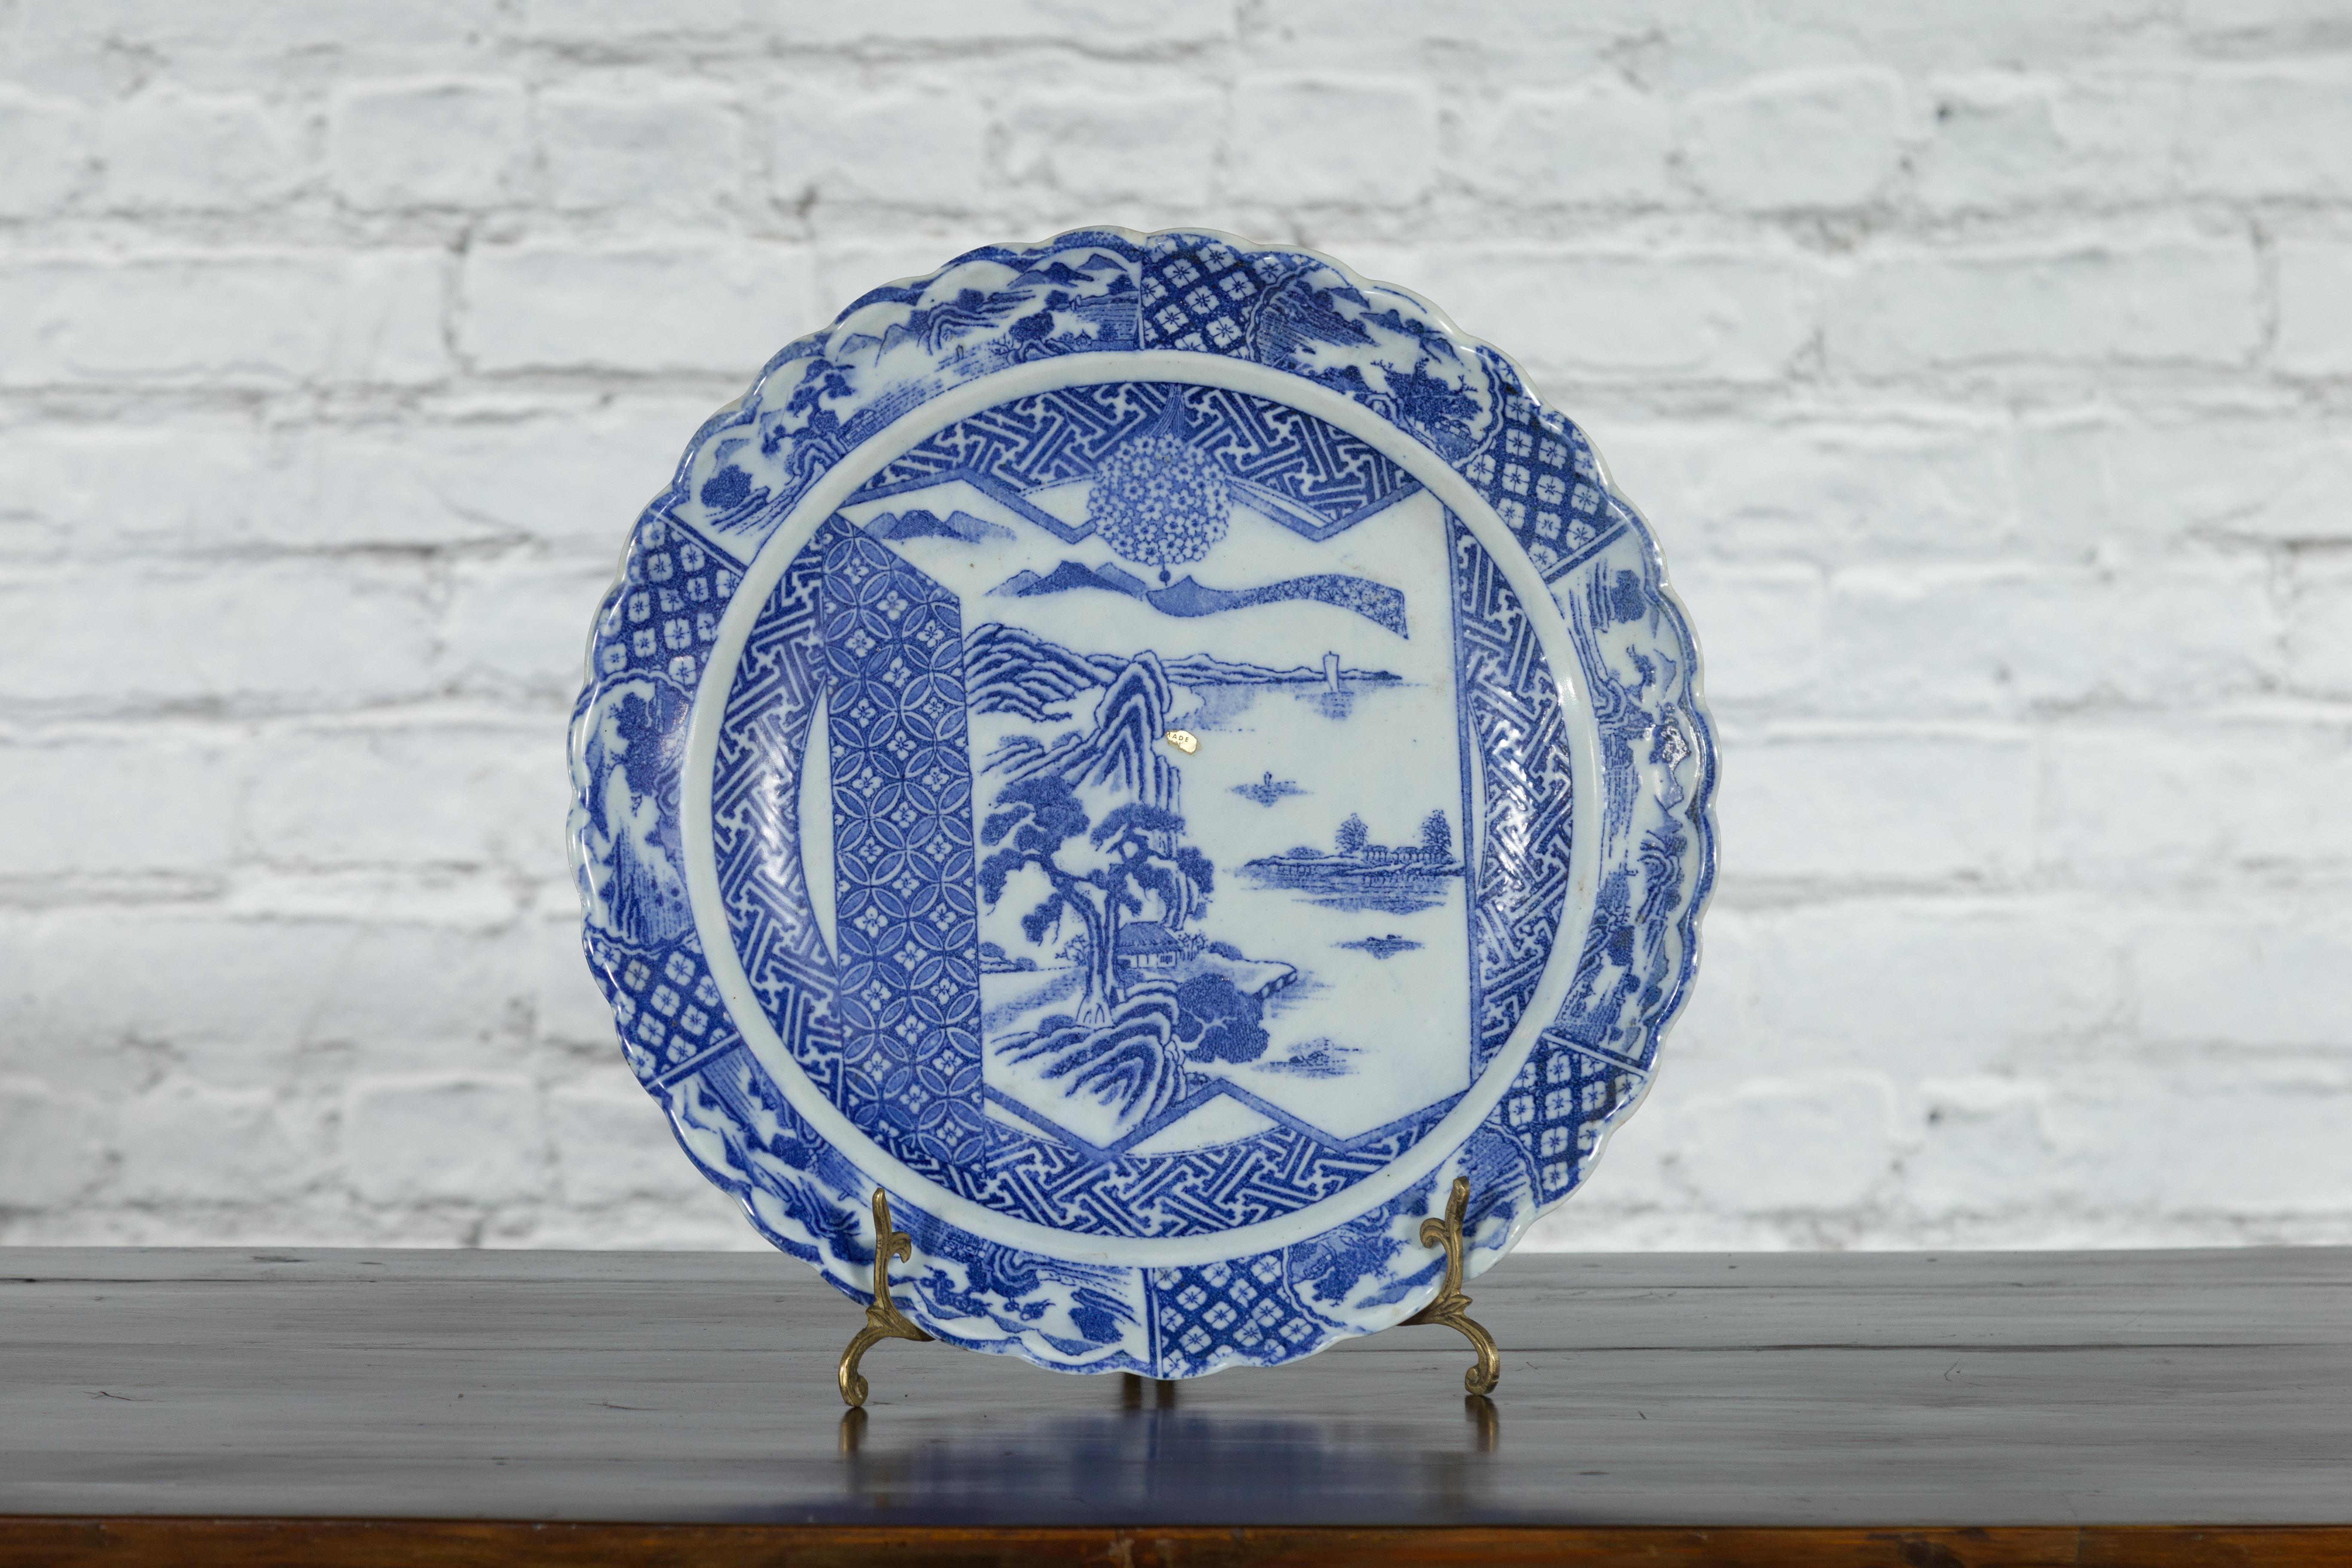 Japanischer Porzellanteller aus dem 19. Jahrhundert mit handgemaltem blau-weißem Dekor aus Berglandschaften und Architektur, umgeben von geometrischen Motiven. Dieser Porzellanteller, der im 19. Jahrhundert in Japan hergestellt wurde, zeigt ein